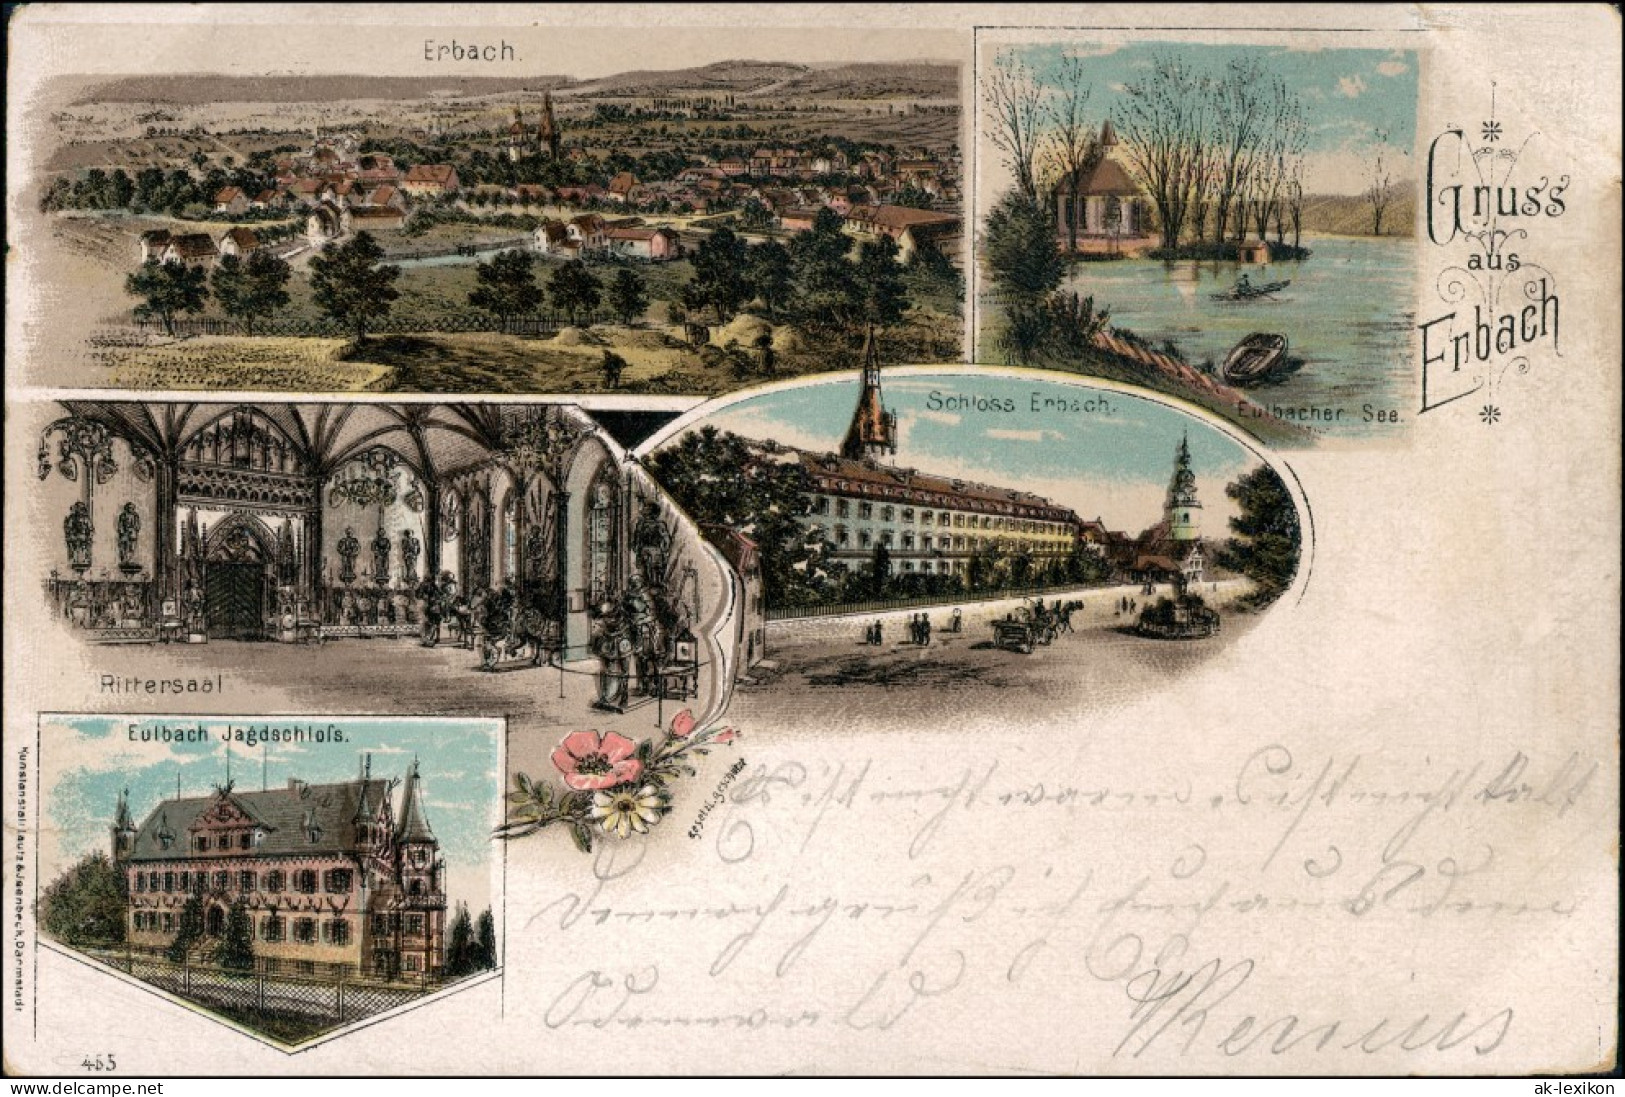 Litho AK Erbach (Odenwald) Eulbach Jagdschloß, Rittersaal, See, Schloss 1902 - Erbach